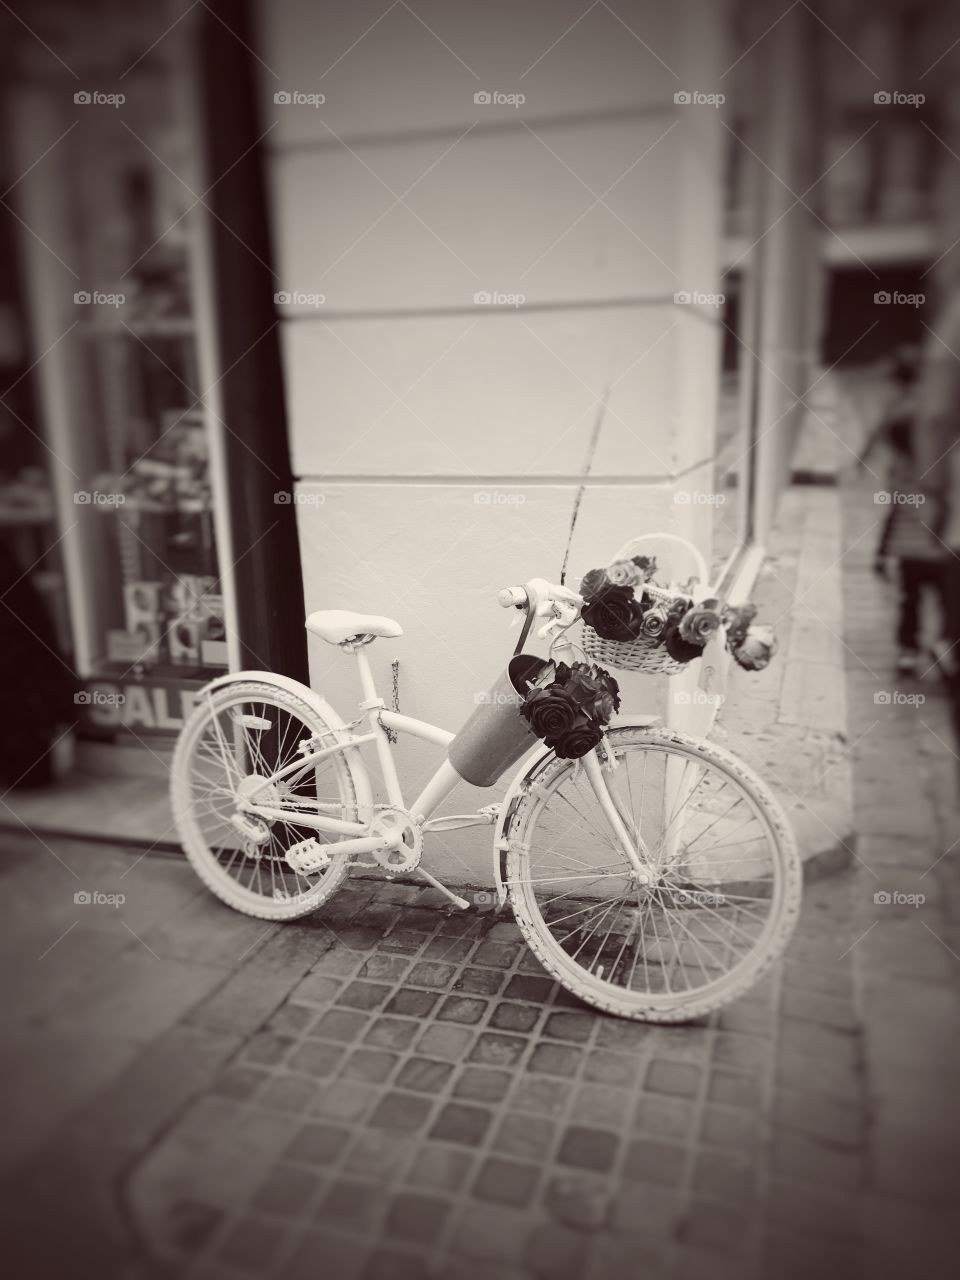 #vintage #bicycle #street